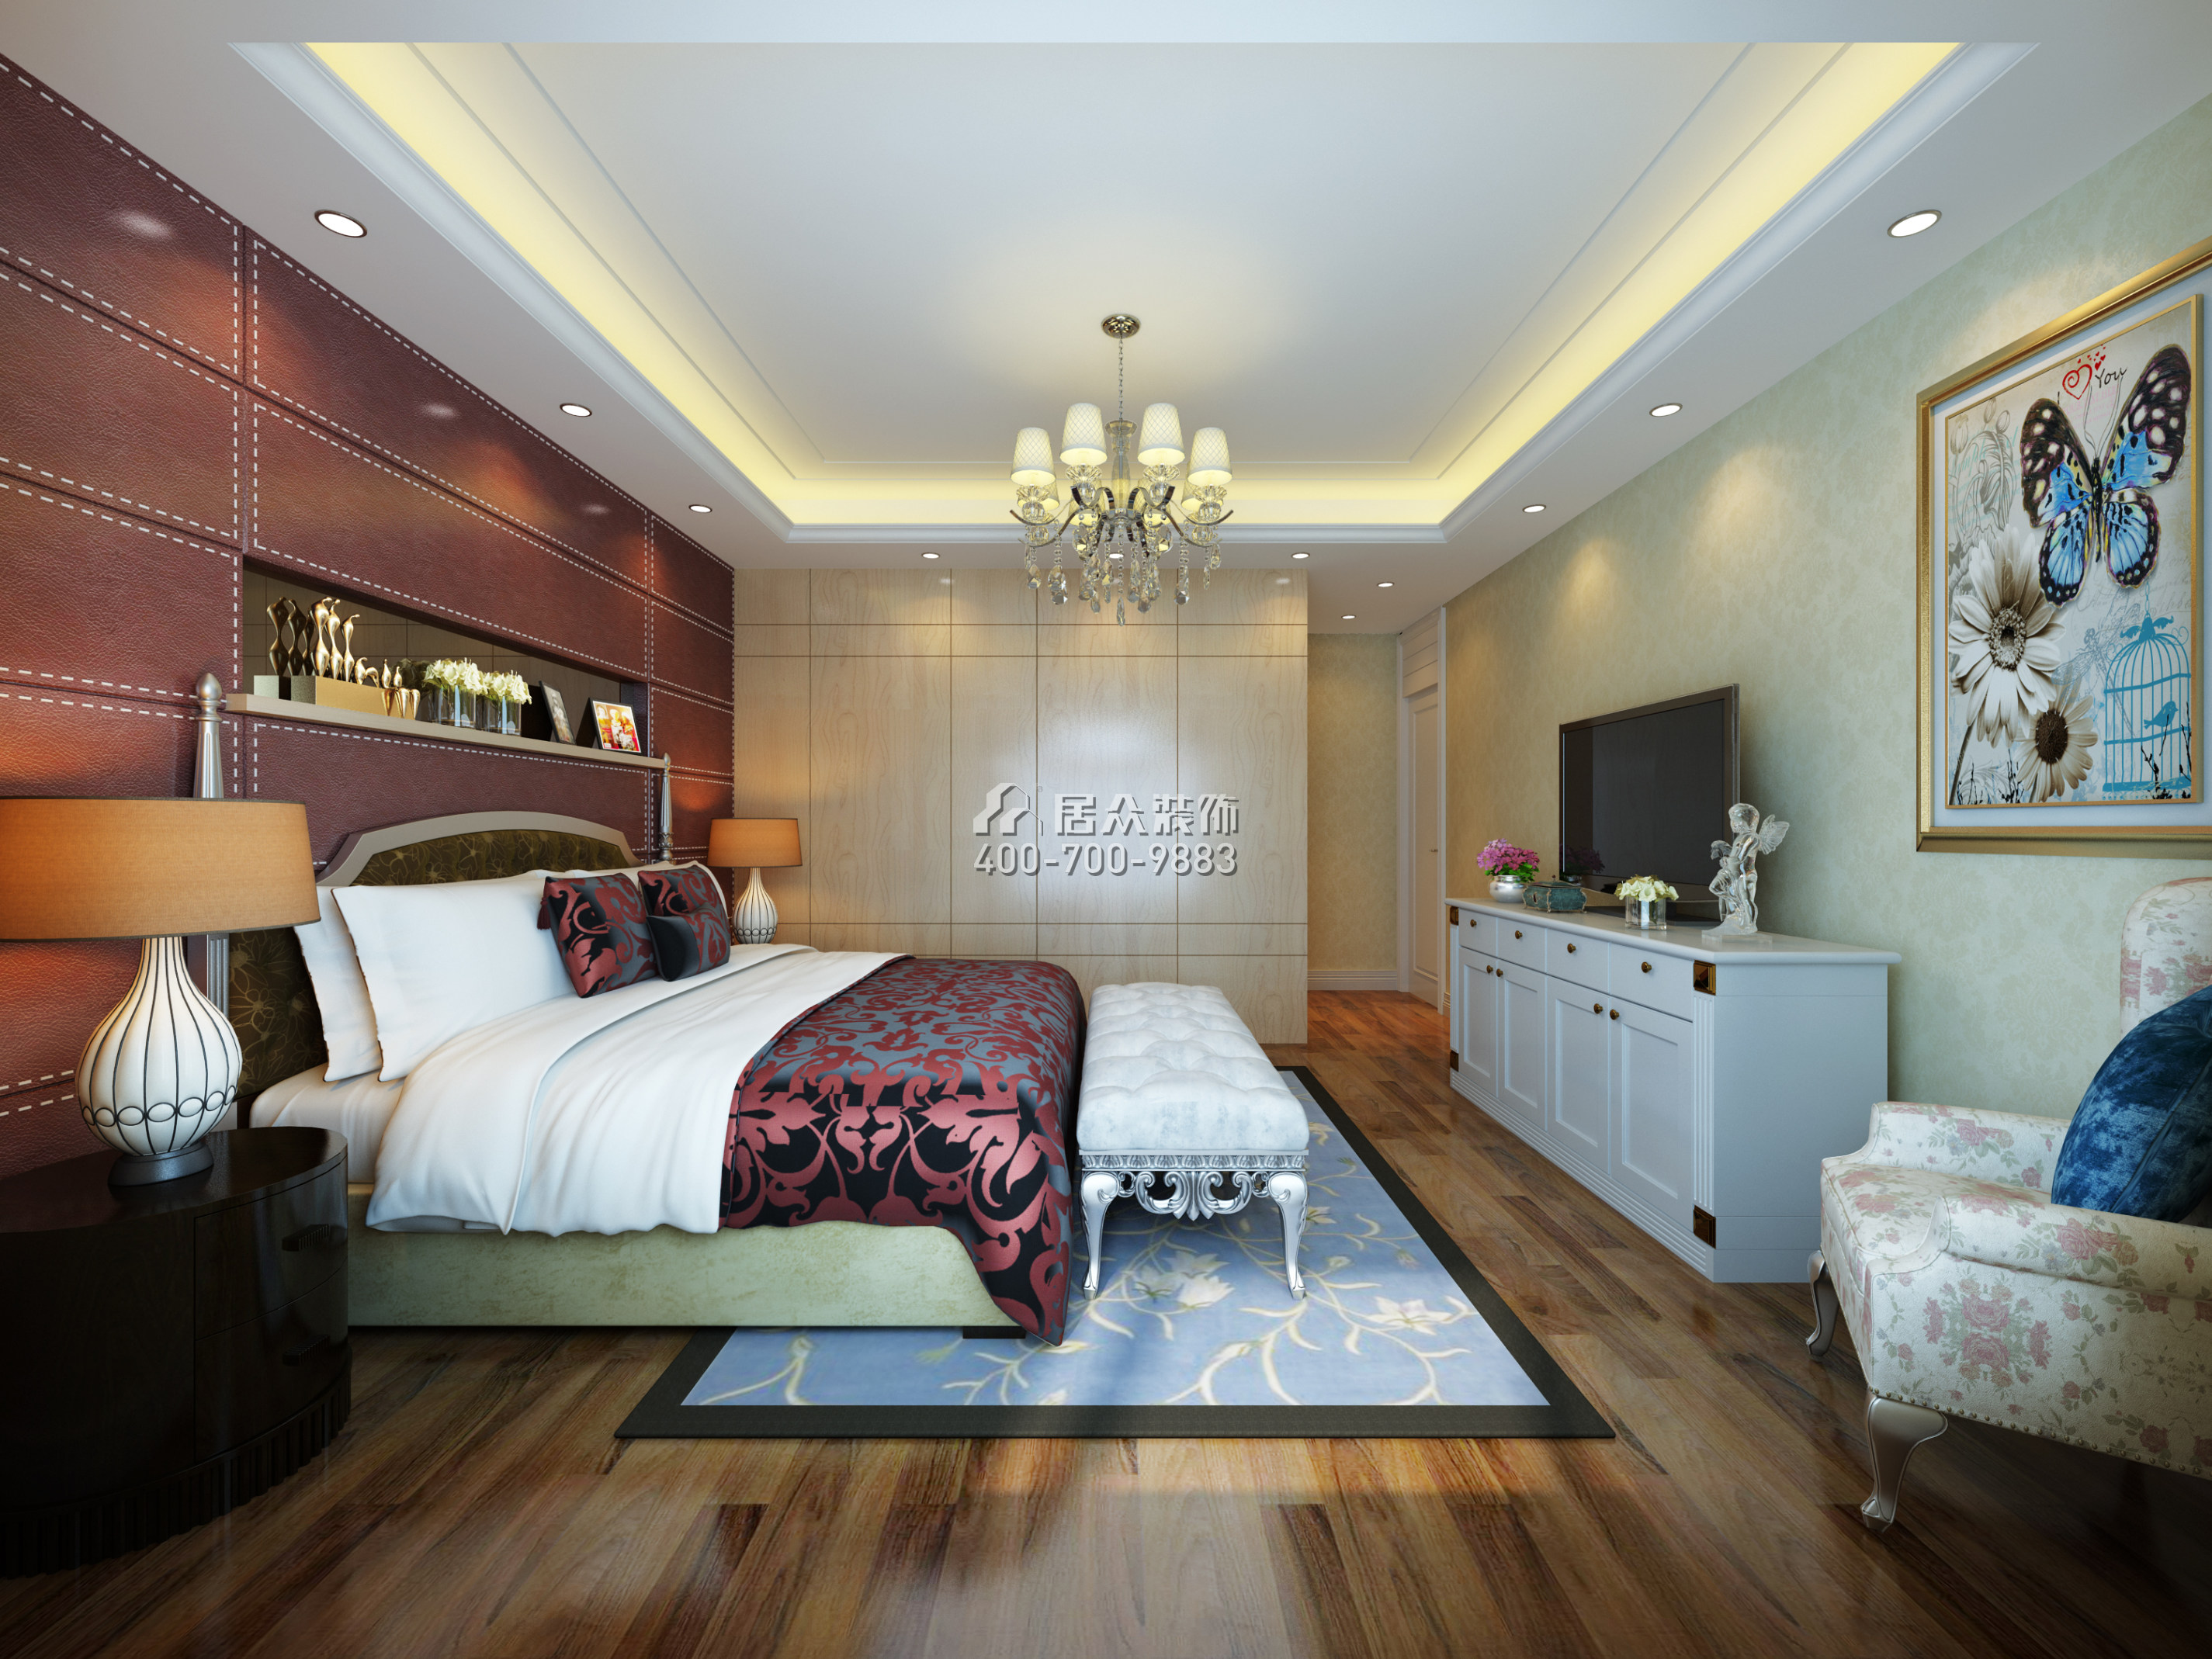 京基滨河时代广场188平方米现代简约风格平层户型卧室装修效果图